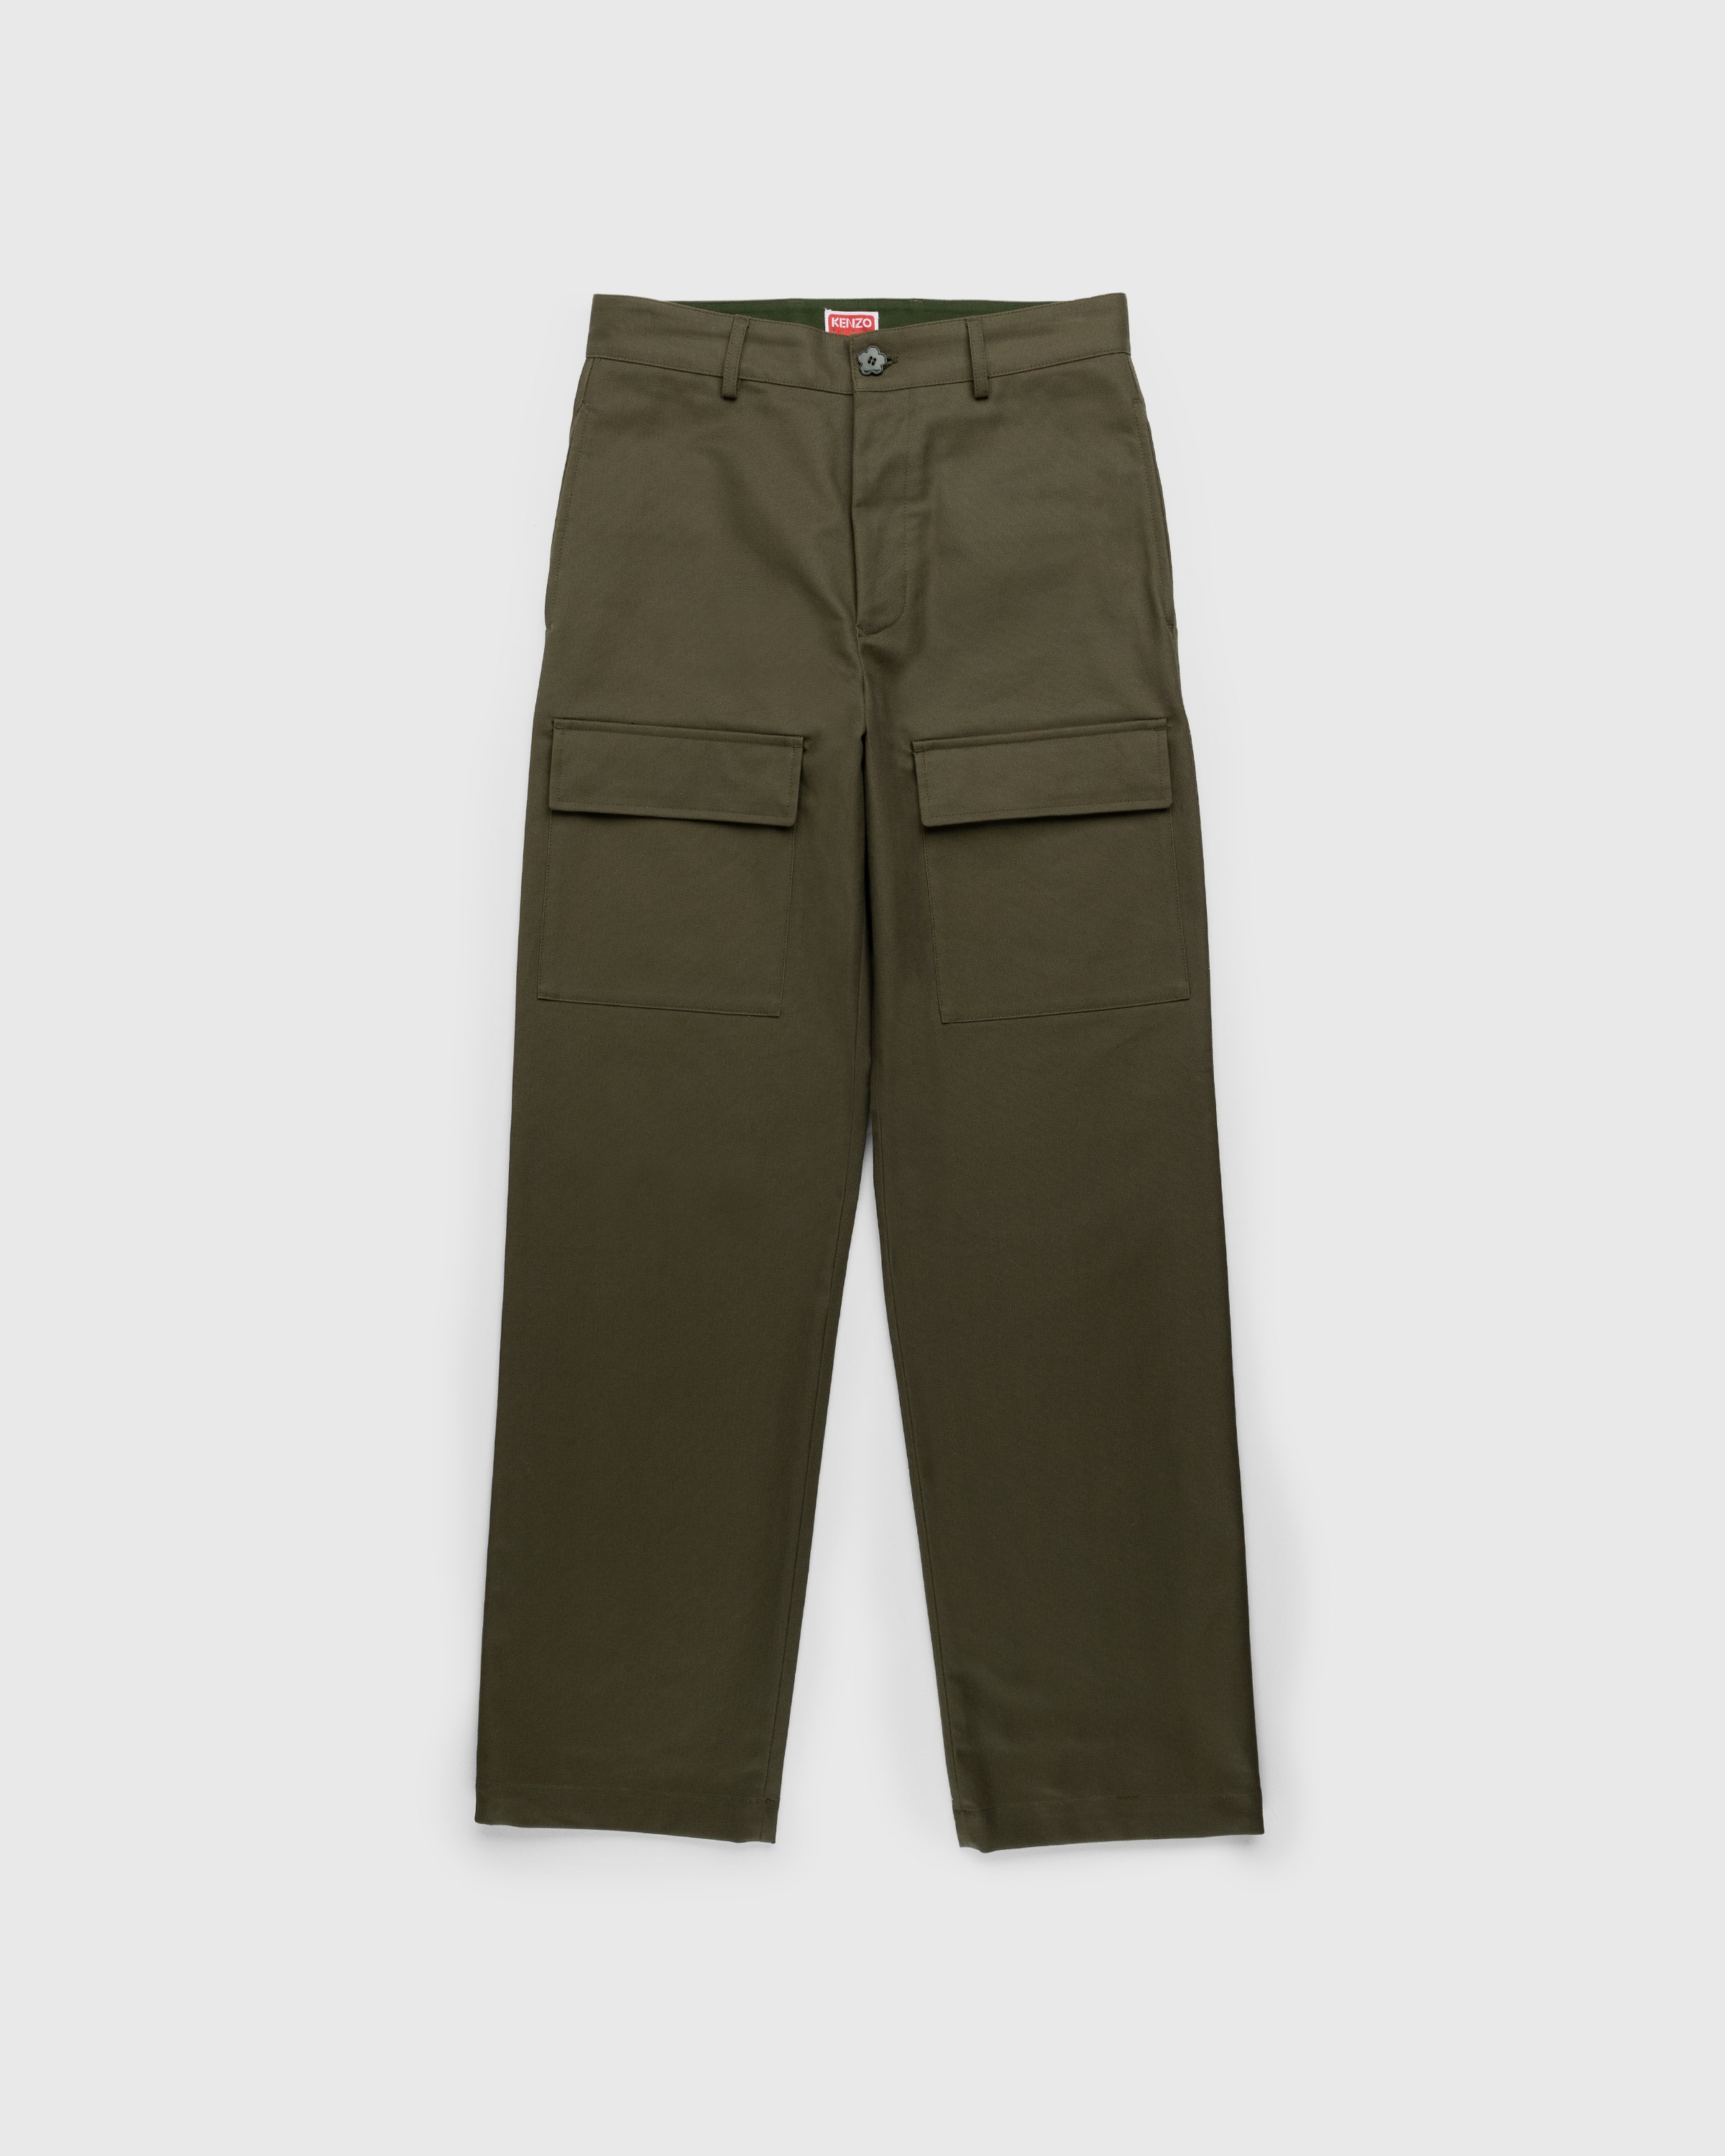 Kenzo – Tailored Pants Dark Khaki